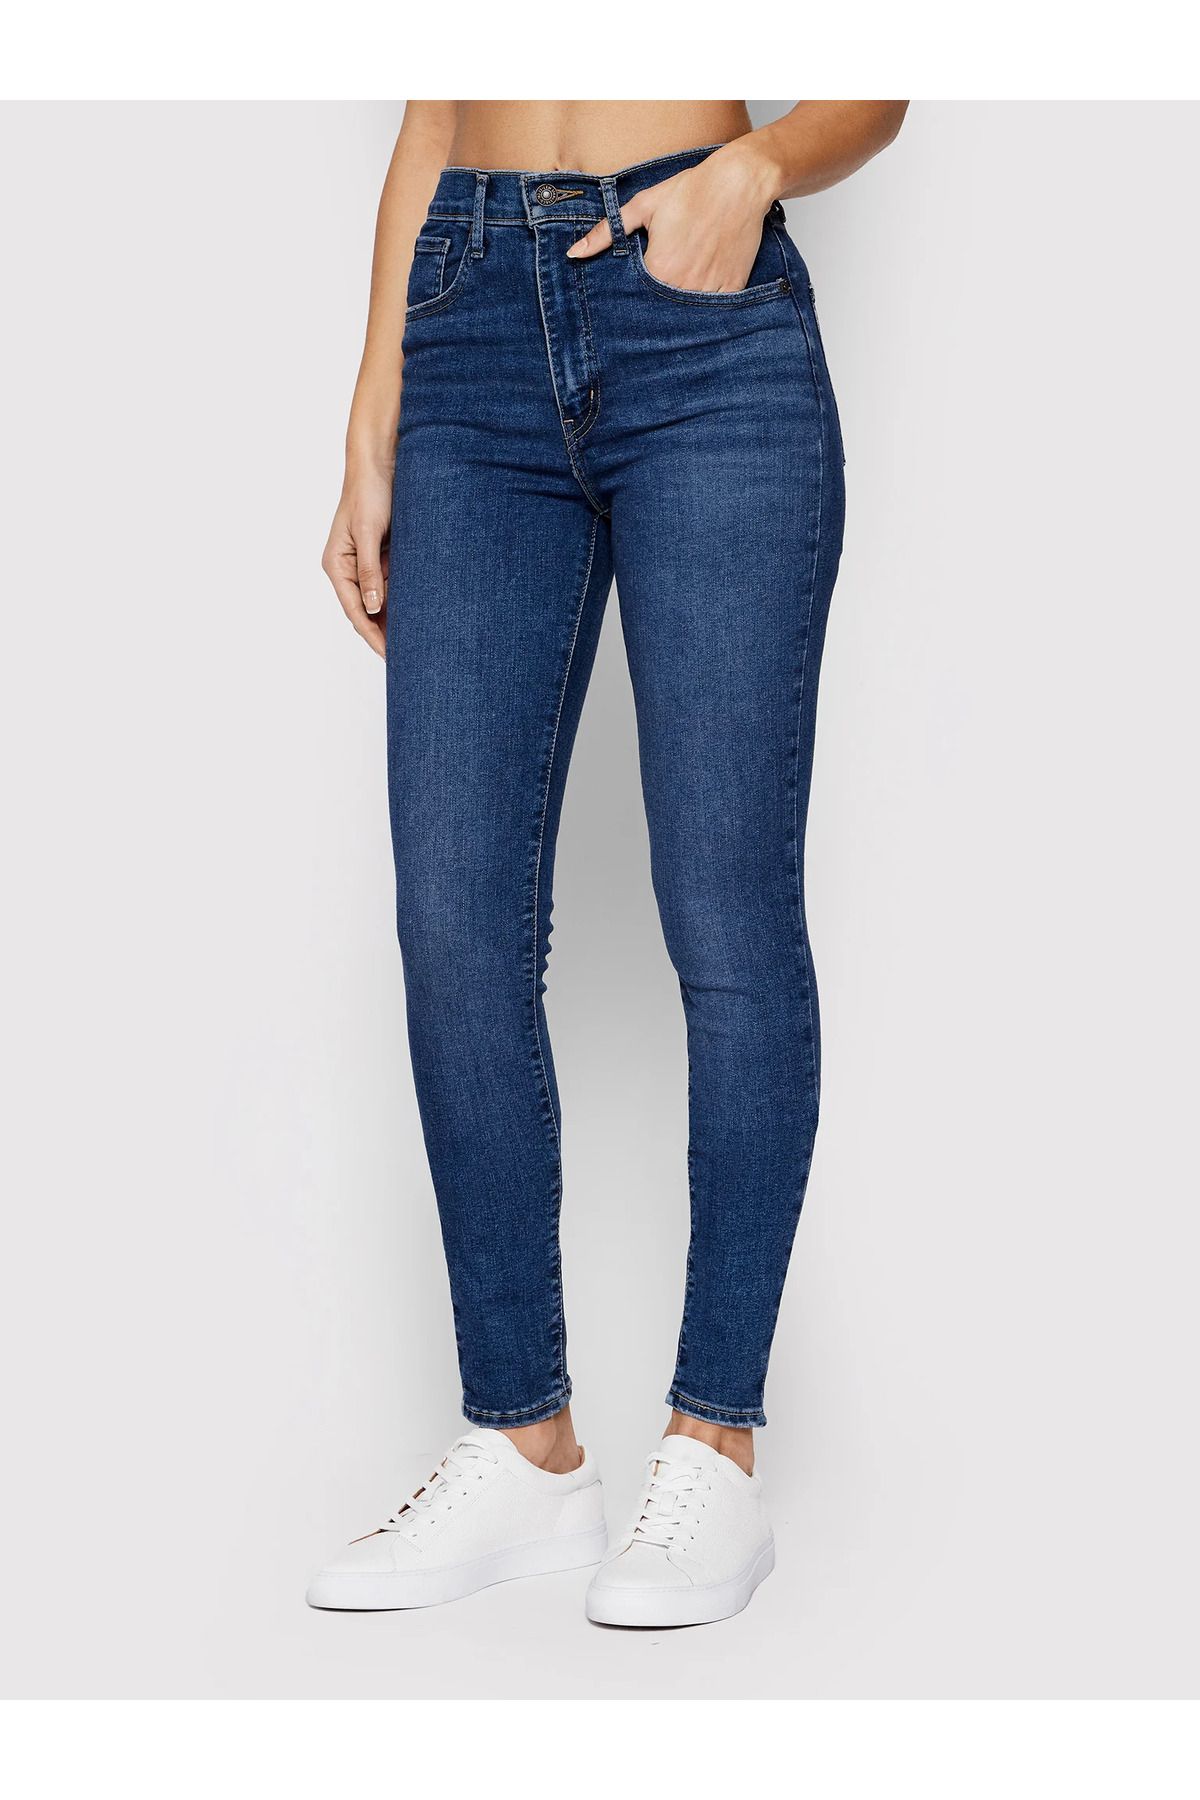 Levi's ® Jeans Mile High Super skınny 22791-0194 Lacivert Skinny Fit